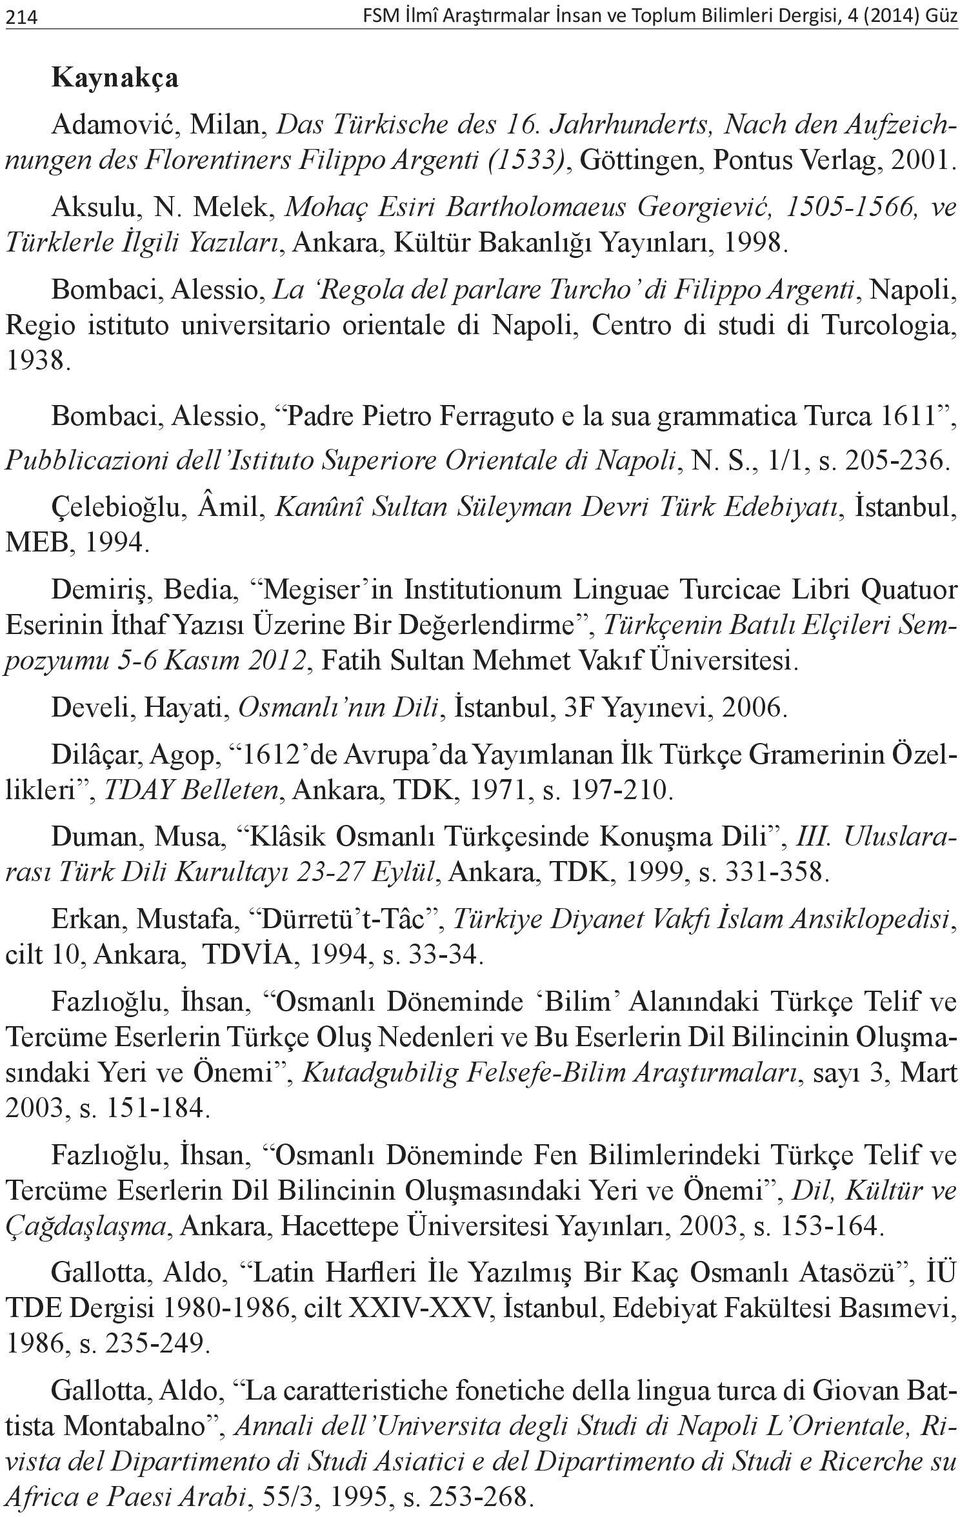 Melek, Mohaç Esiri Bartholomaeus Georgiević, 1505-1566, ve Türklerle İlgili Yazıları, Ankara, Kültür Bakanlığı Yayınları, 1998.